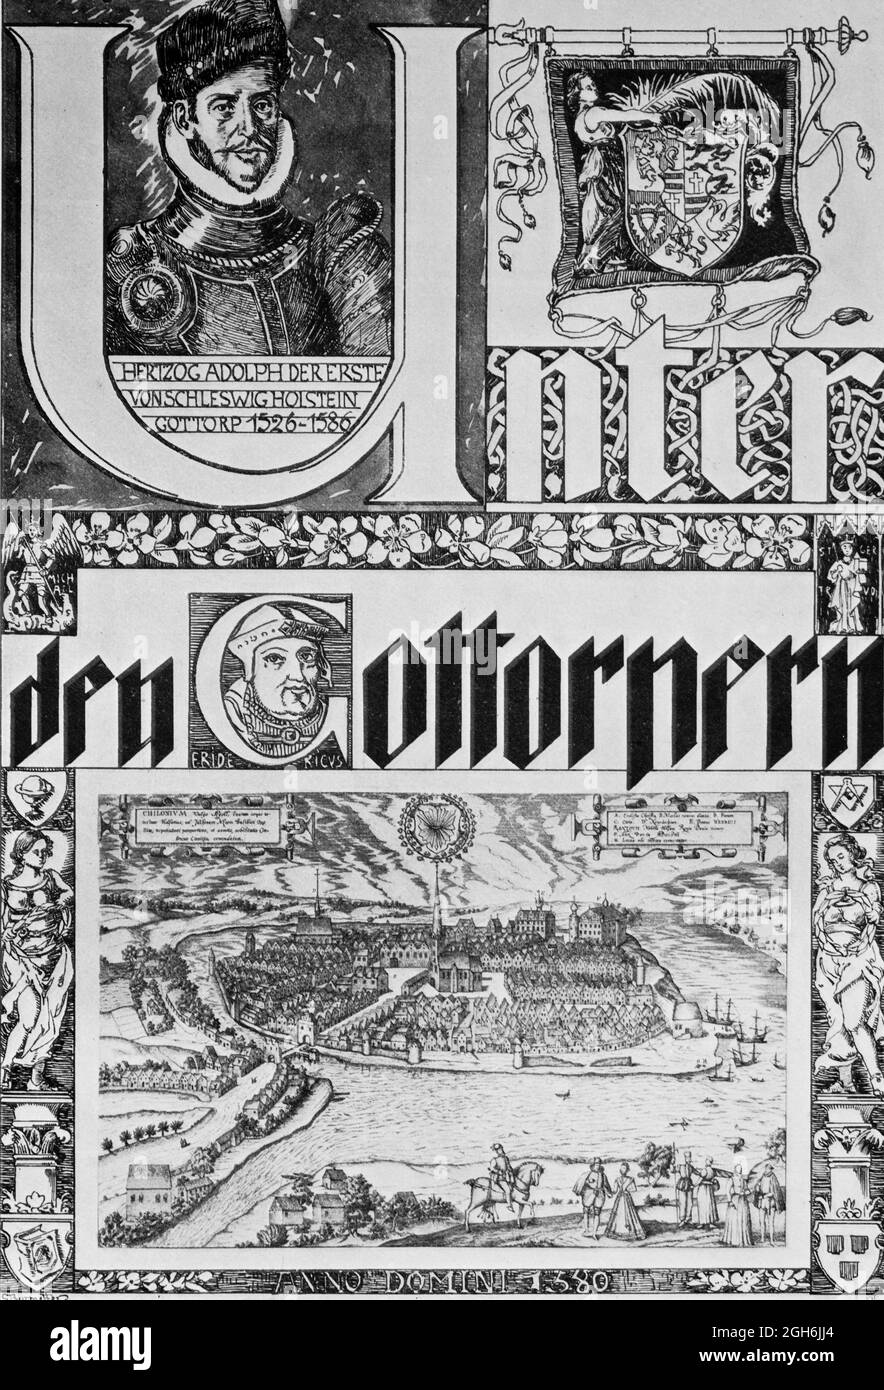 Frontespizio al capitolo Unter den Gottorpern o tra i Gottop, incisione storica del 1899, Kiel, Schleswig-Holstein, Germania settentrionale, Foto Stock